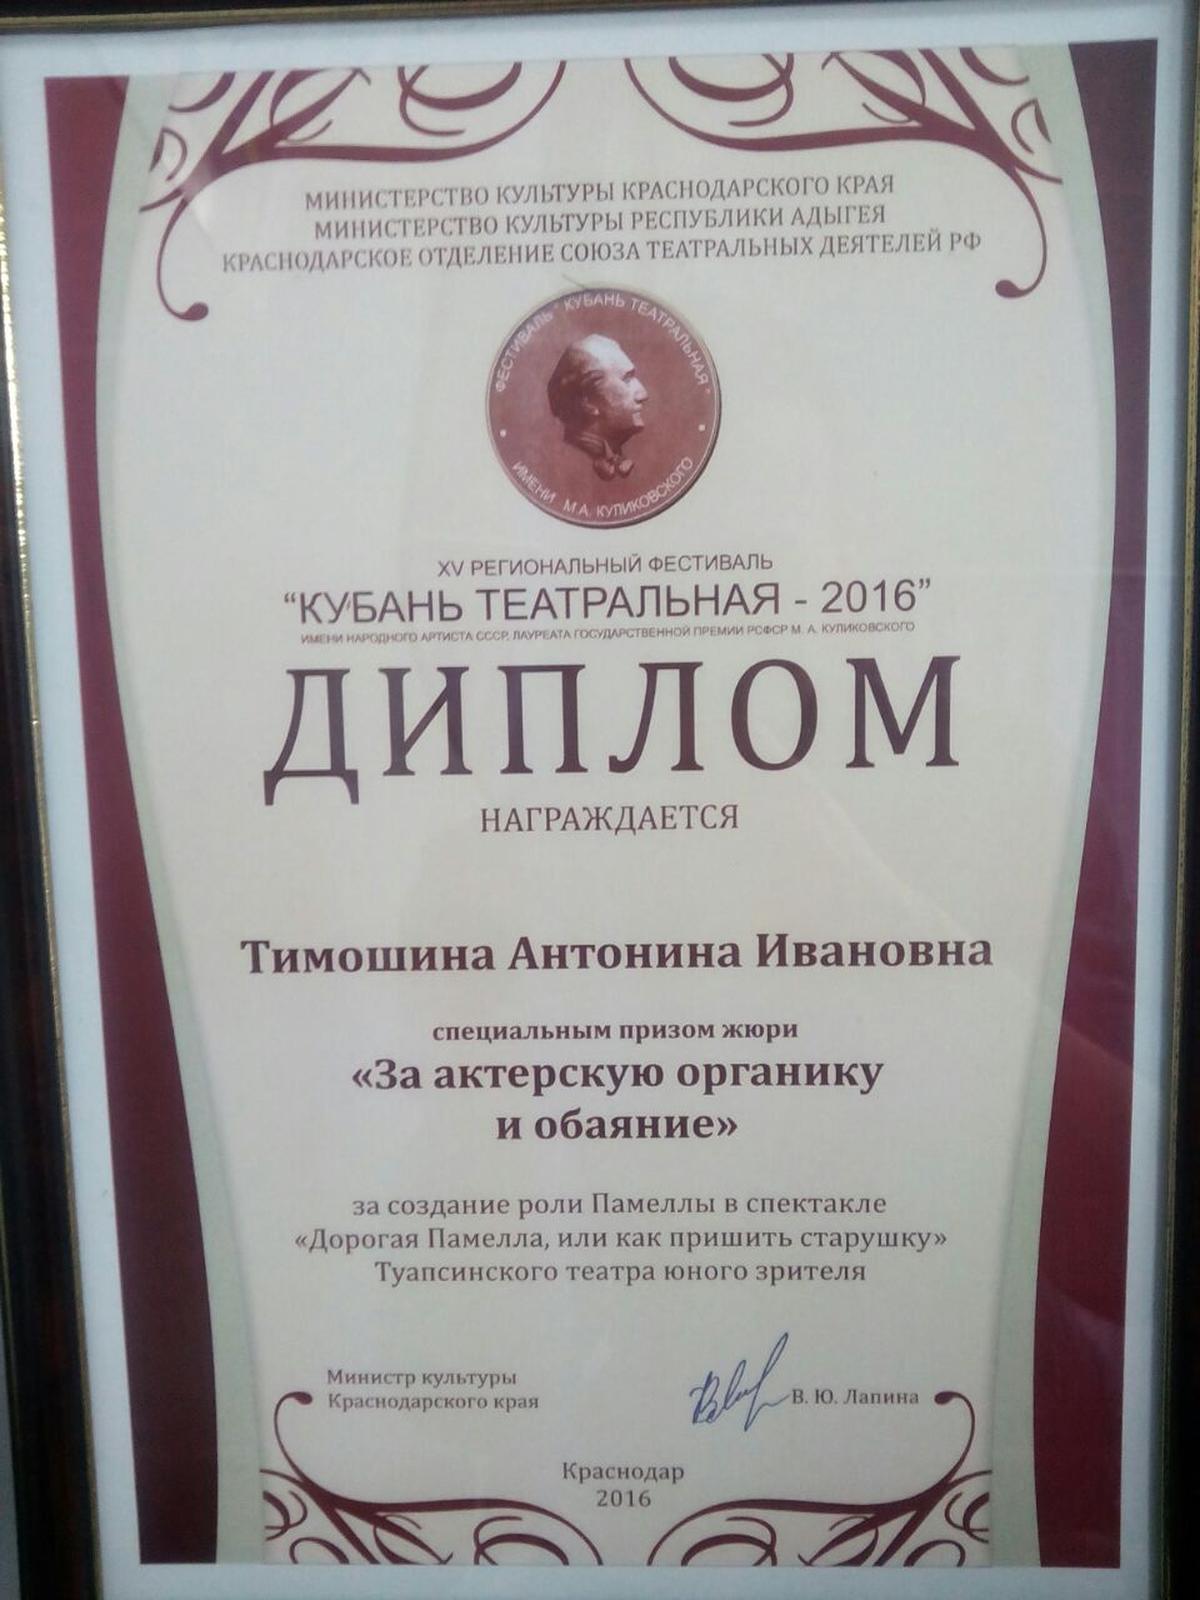 Специальный приз жюри XV фестиваля «Кубань театральная - 2016» вручили артистке Туапсинского театра юного зрителя